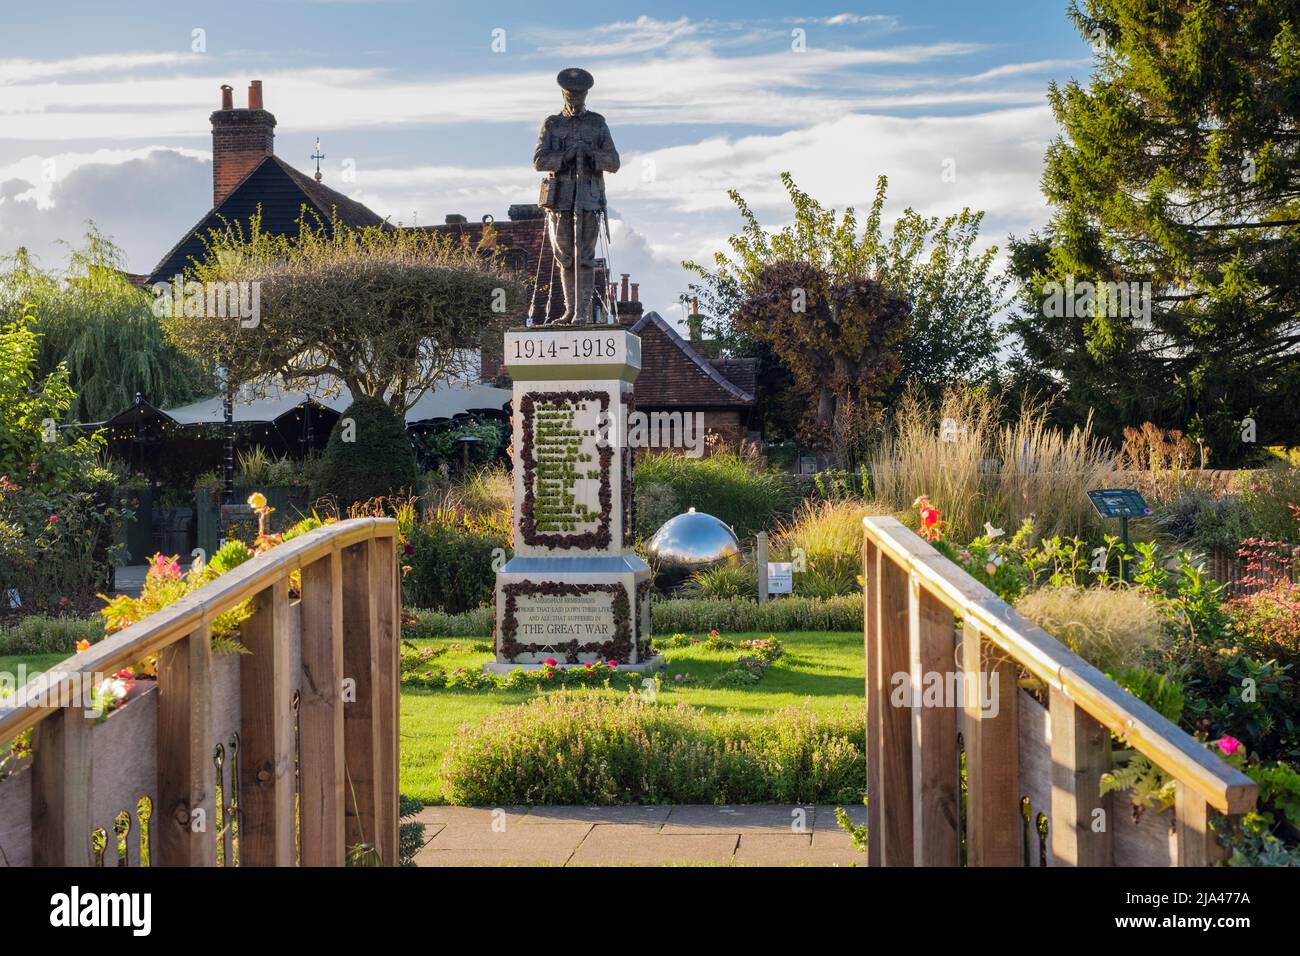 Mémorial de guerre dans le jardin de la paix. Amersham, Buckinghamshire, Angleterre, Royaume-Uni, Grande-Bretagne Banque D'Images